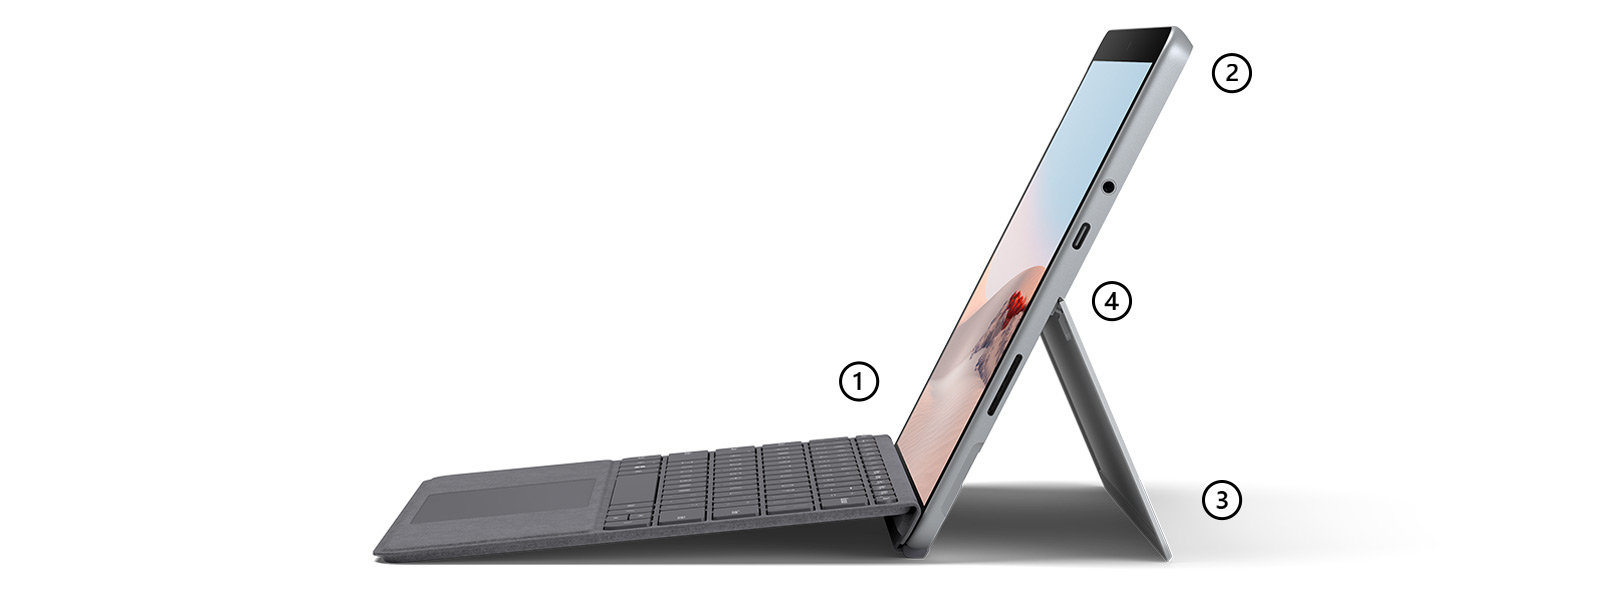 Surface Go 2 im Laptop-Modus mit Surface Go Signature Type Cover in Platin mit Punkten, die den mit dem Stift bedienbaren Touchscreen, die Mikrofone und die Kamera, den Kickstand und den USB-C-Anschluss hervorheben